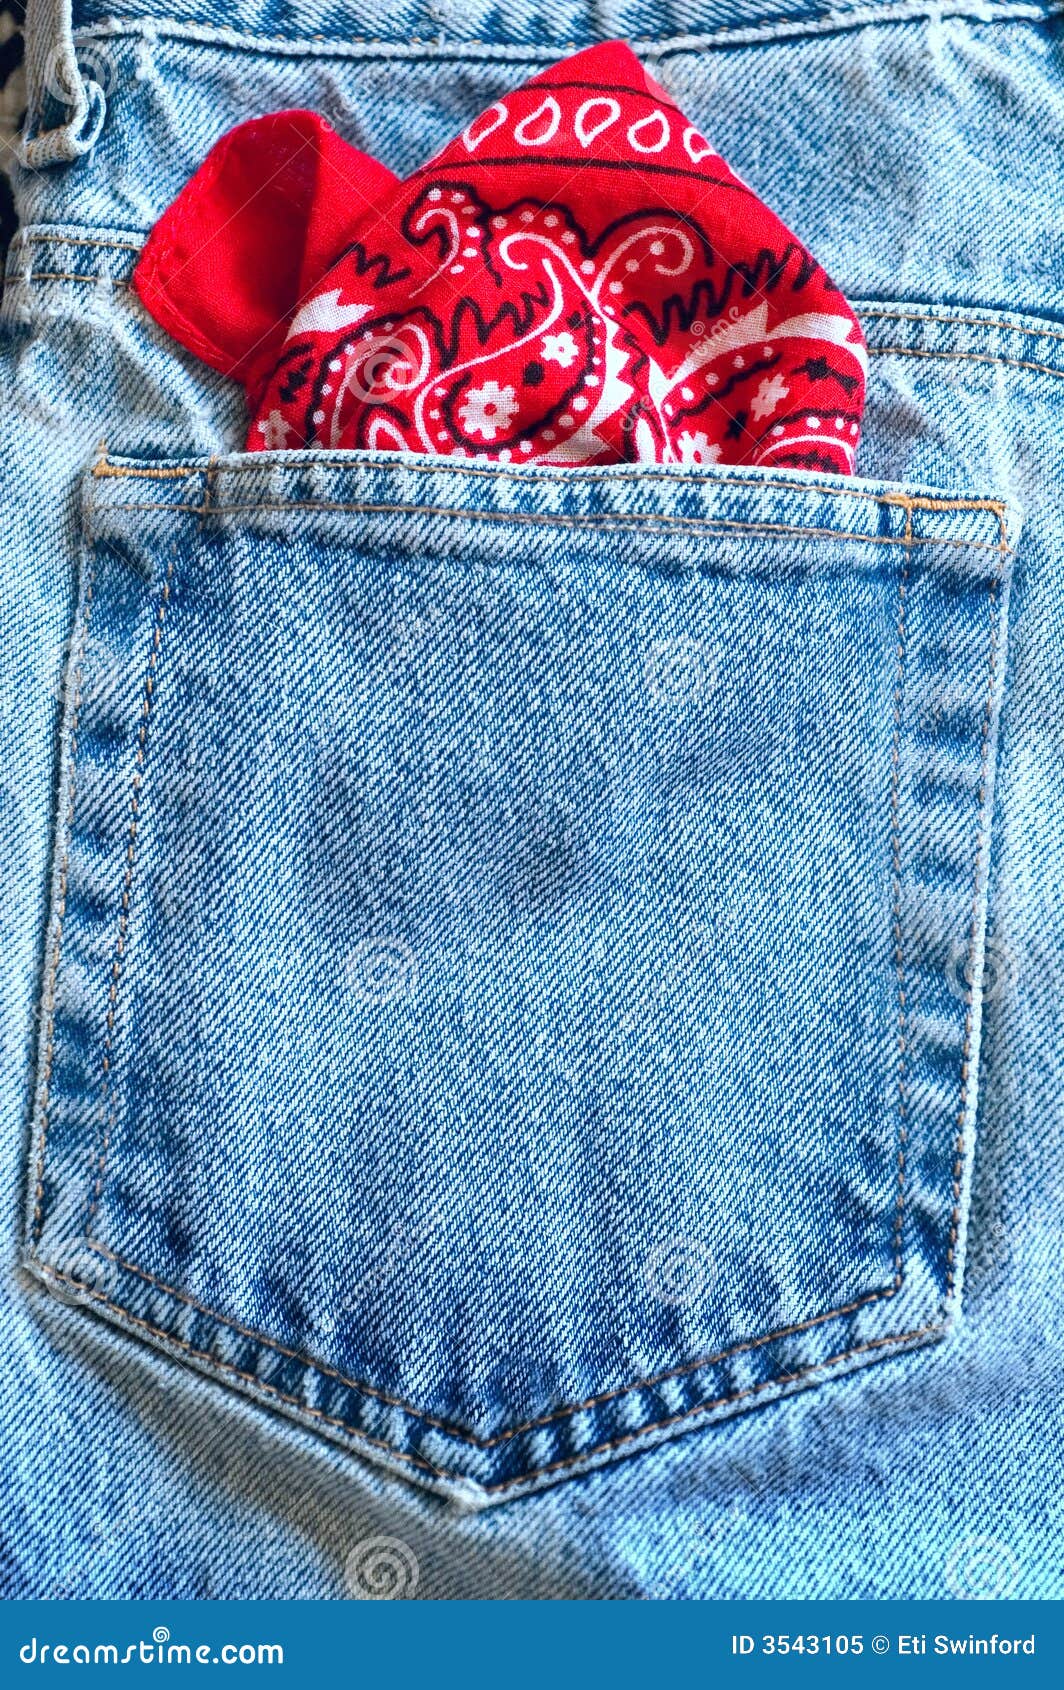 bandanna in pocket